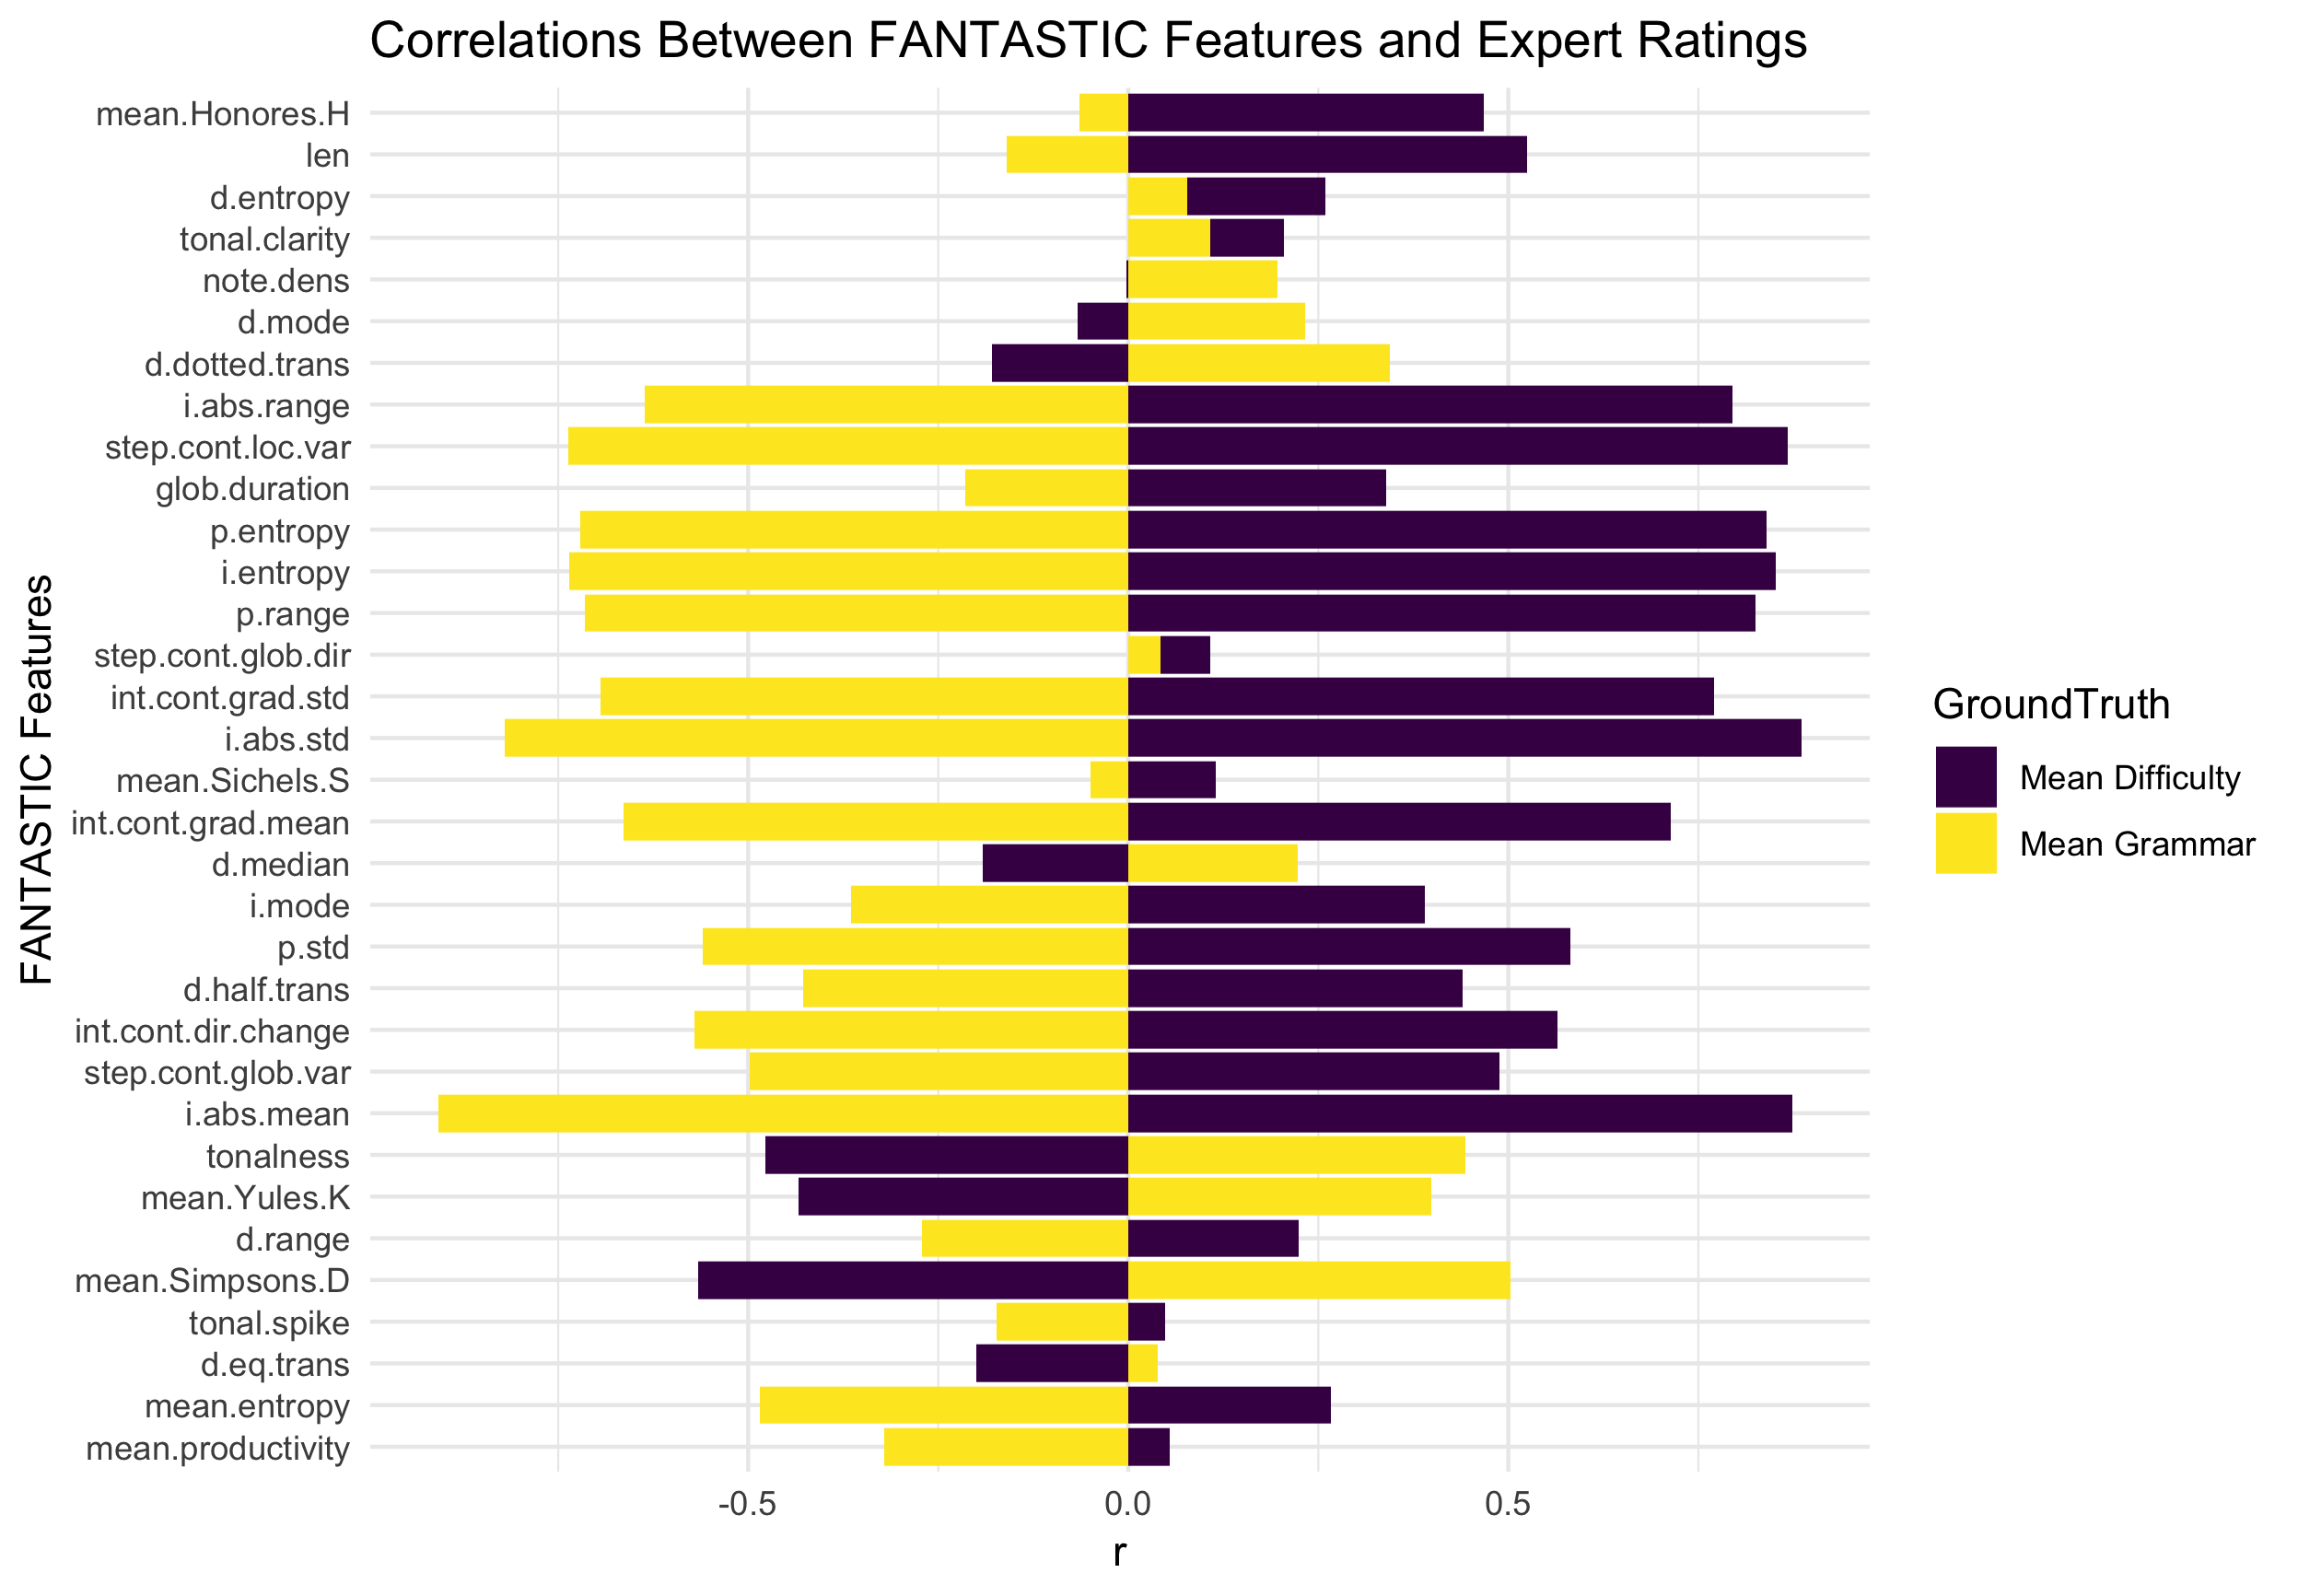 FANTASTIC and Expert Ratings